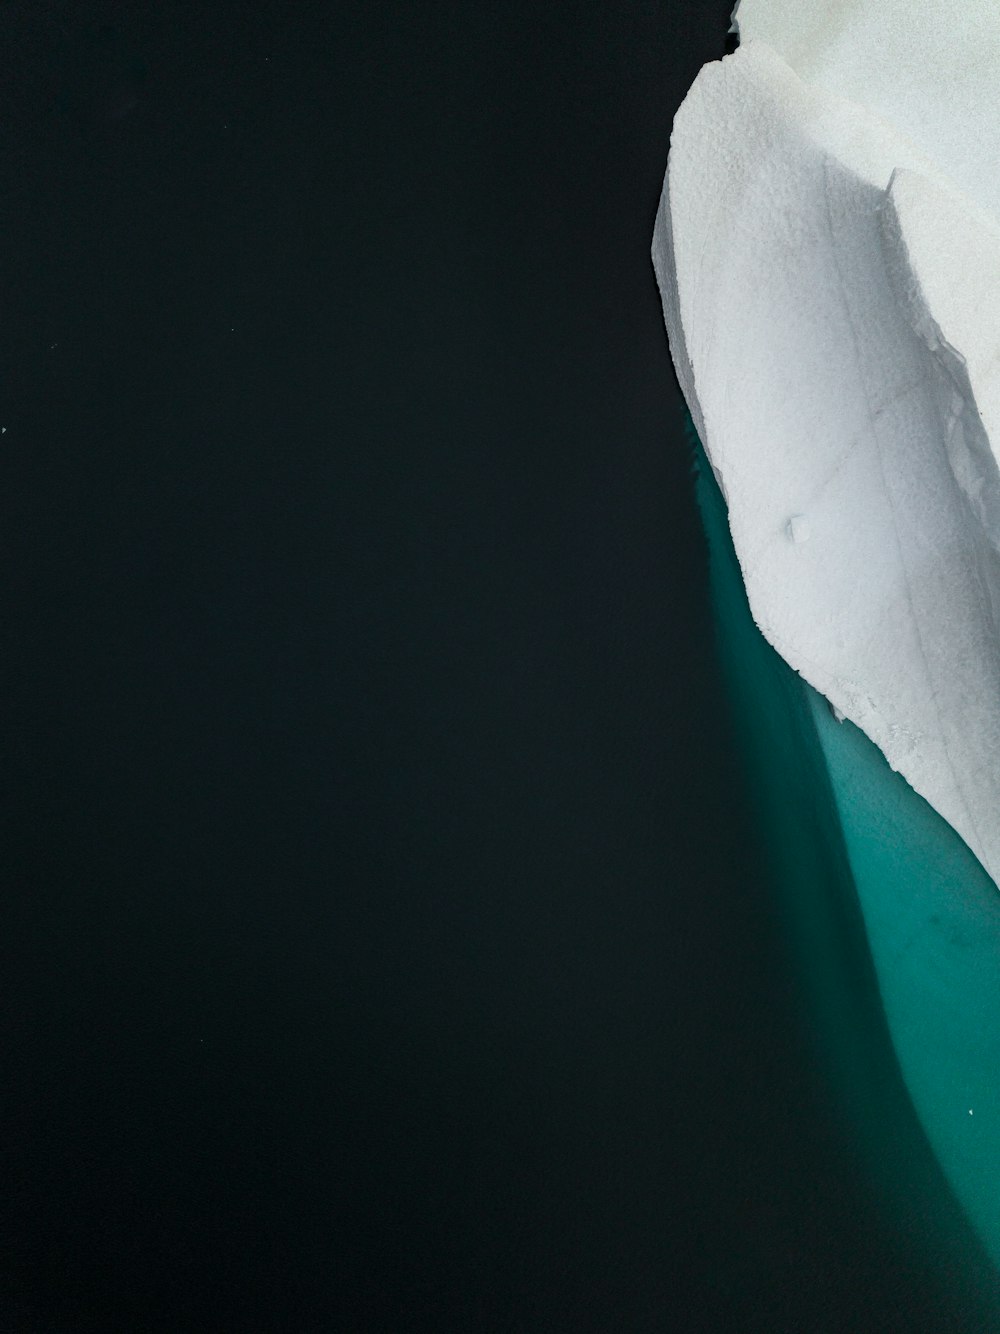 Ein Eisberg, der in der Nähe eines Gletschers im Wasser schwimmt